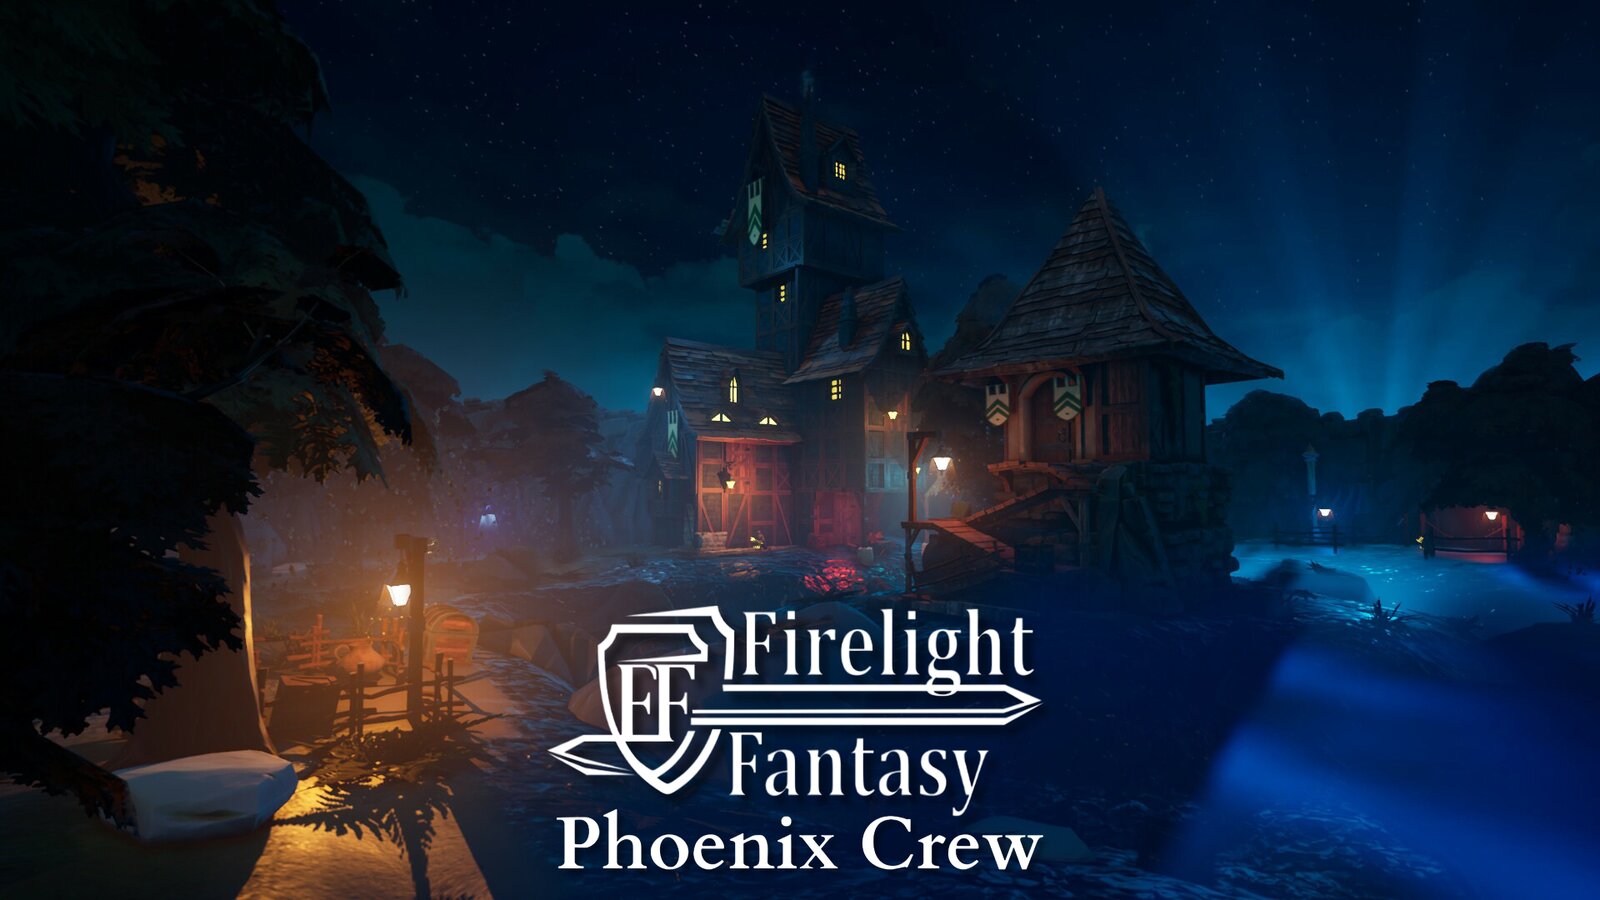 Firelight Fantasy: Phoenix Crew